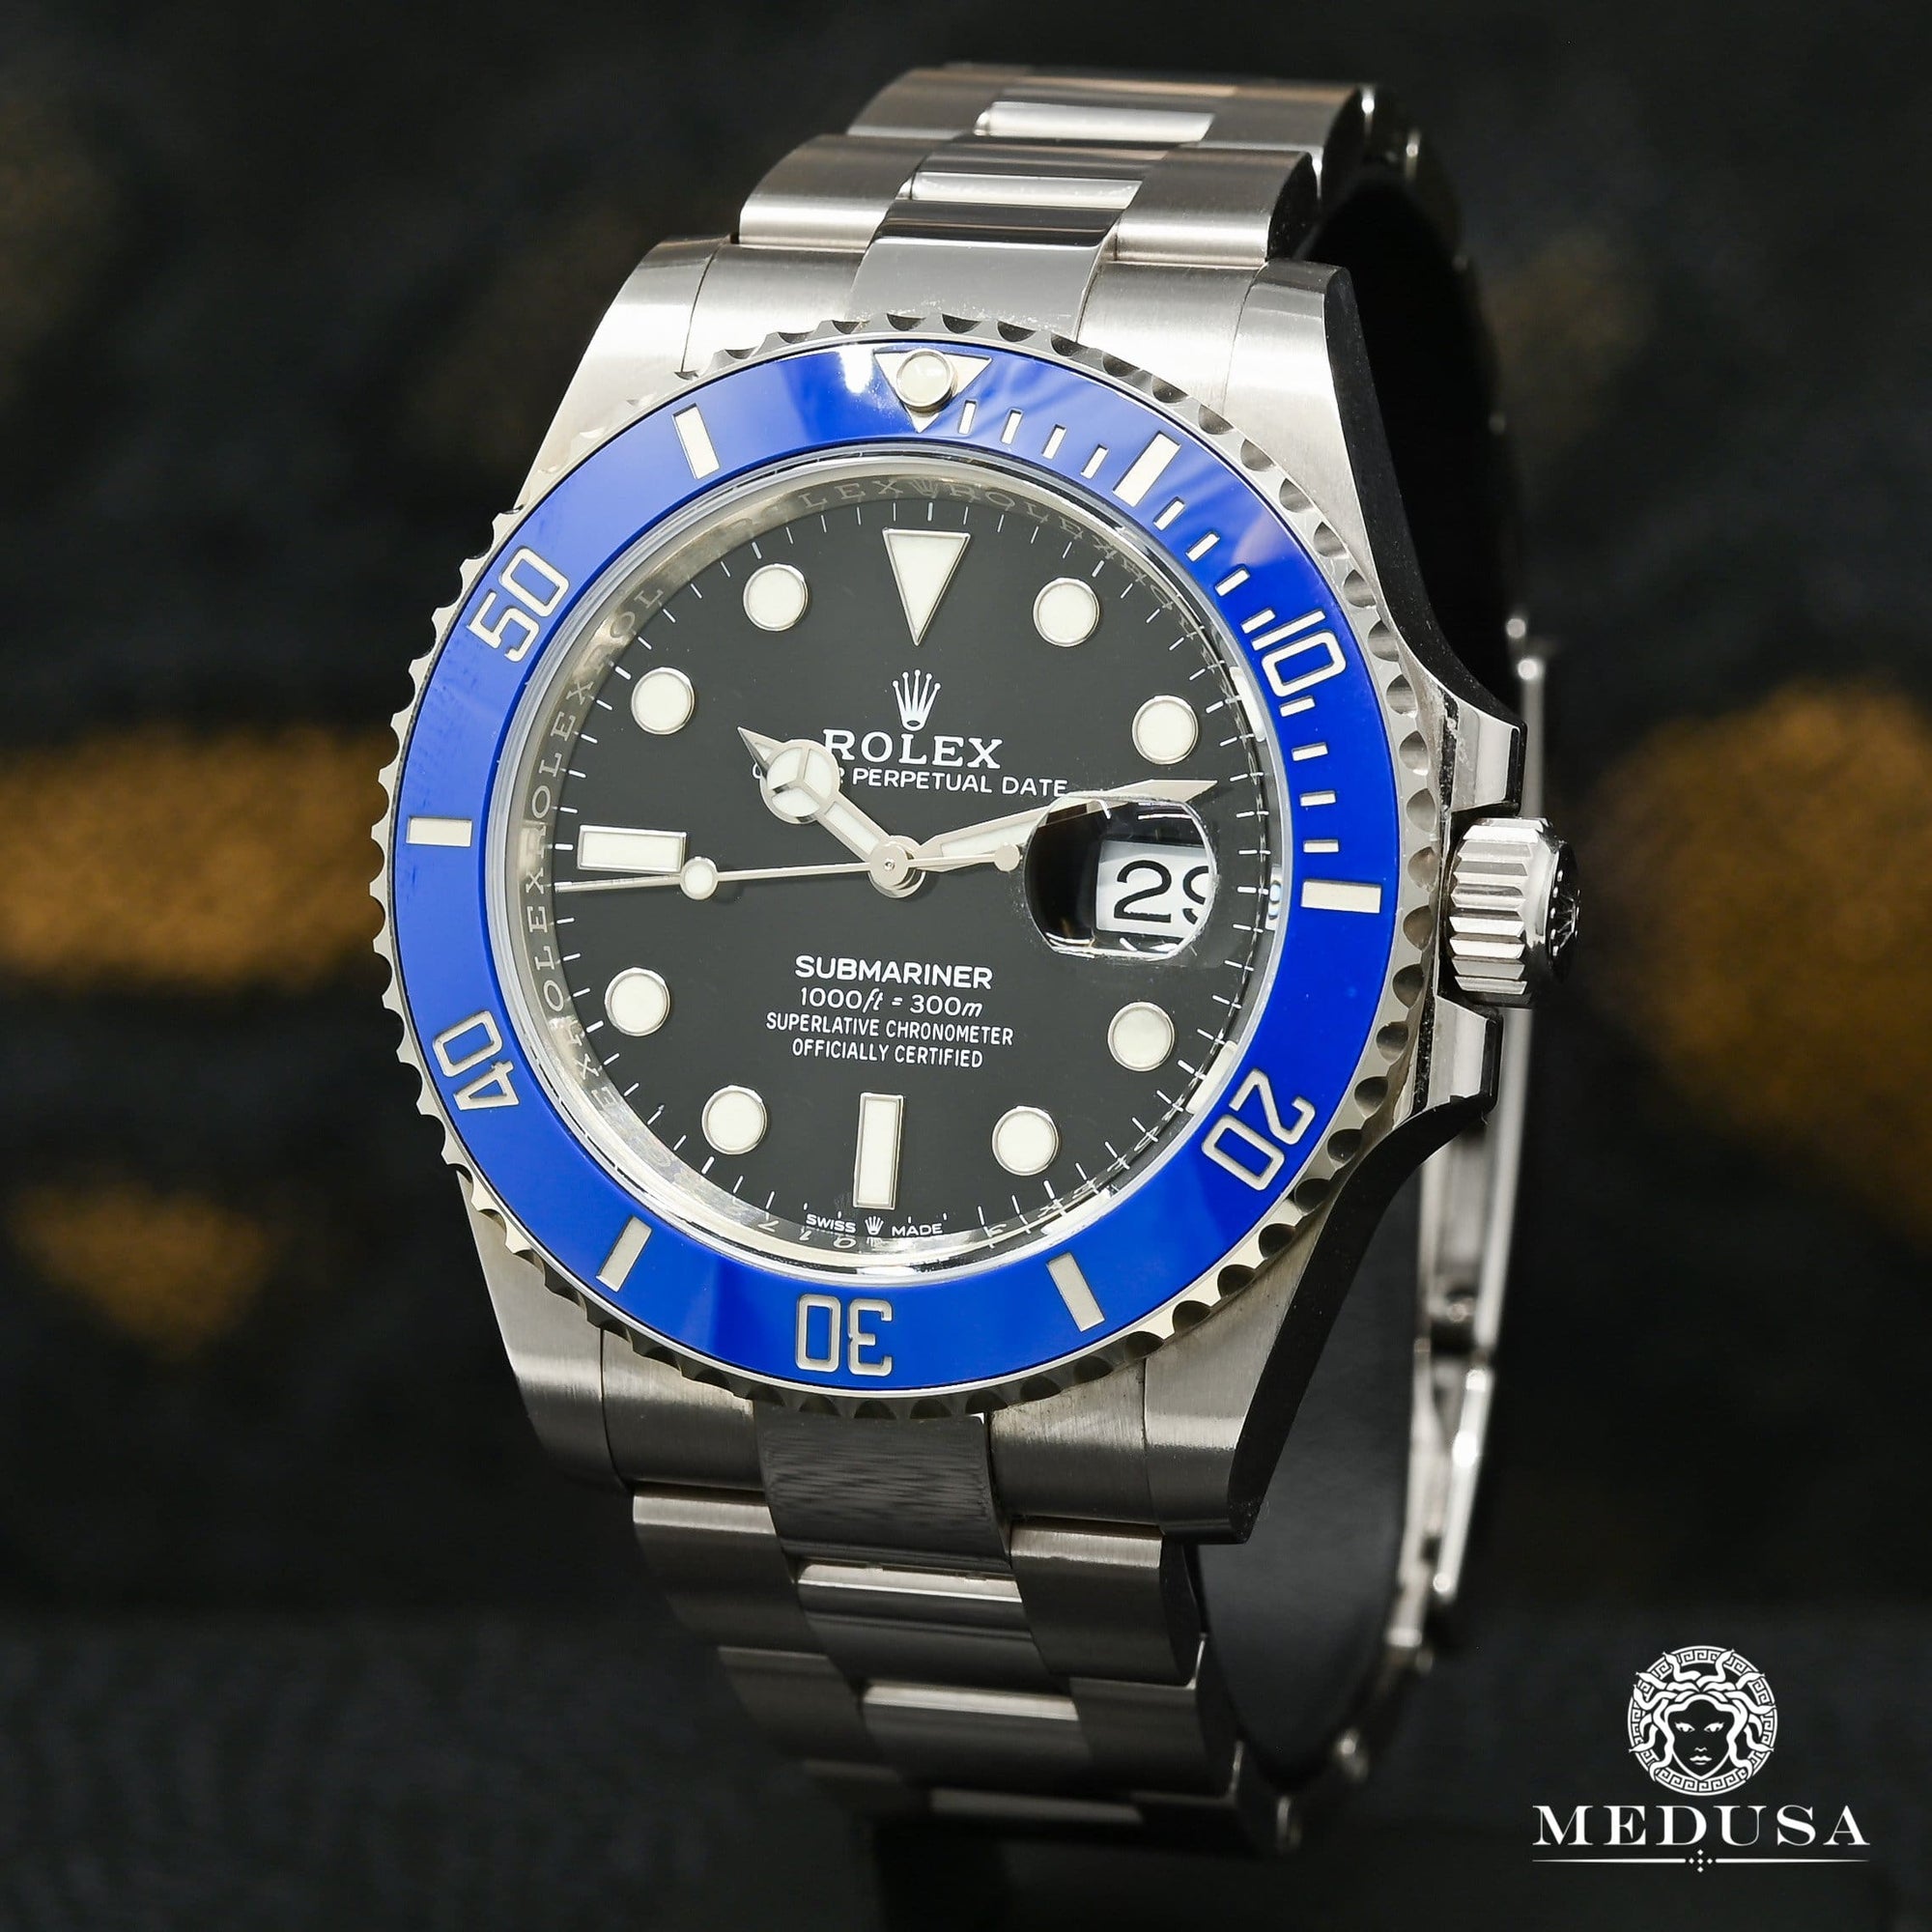 Rolex watch | Rolex Submariner 41mm Men's Watch – 126619LB White Gold